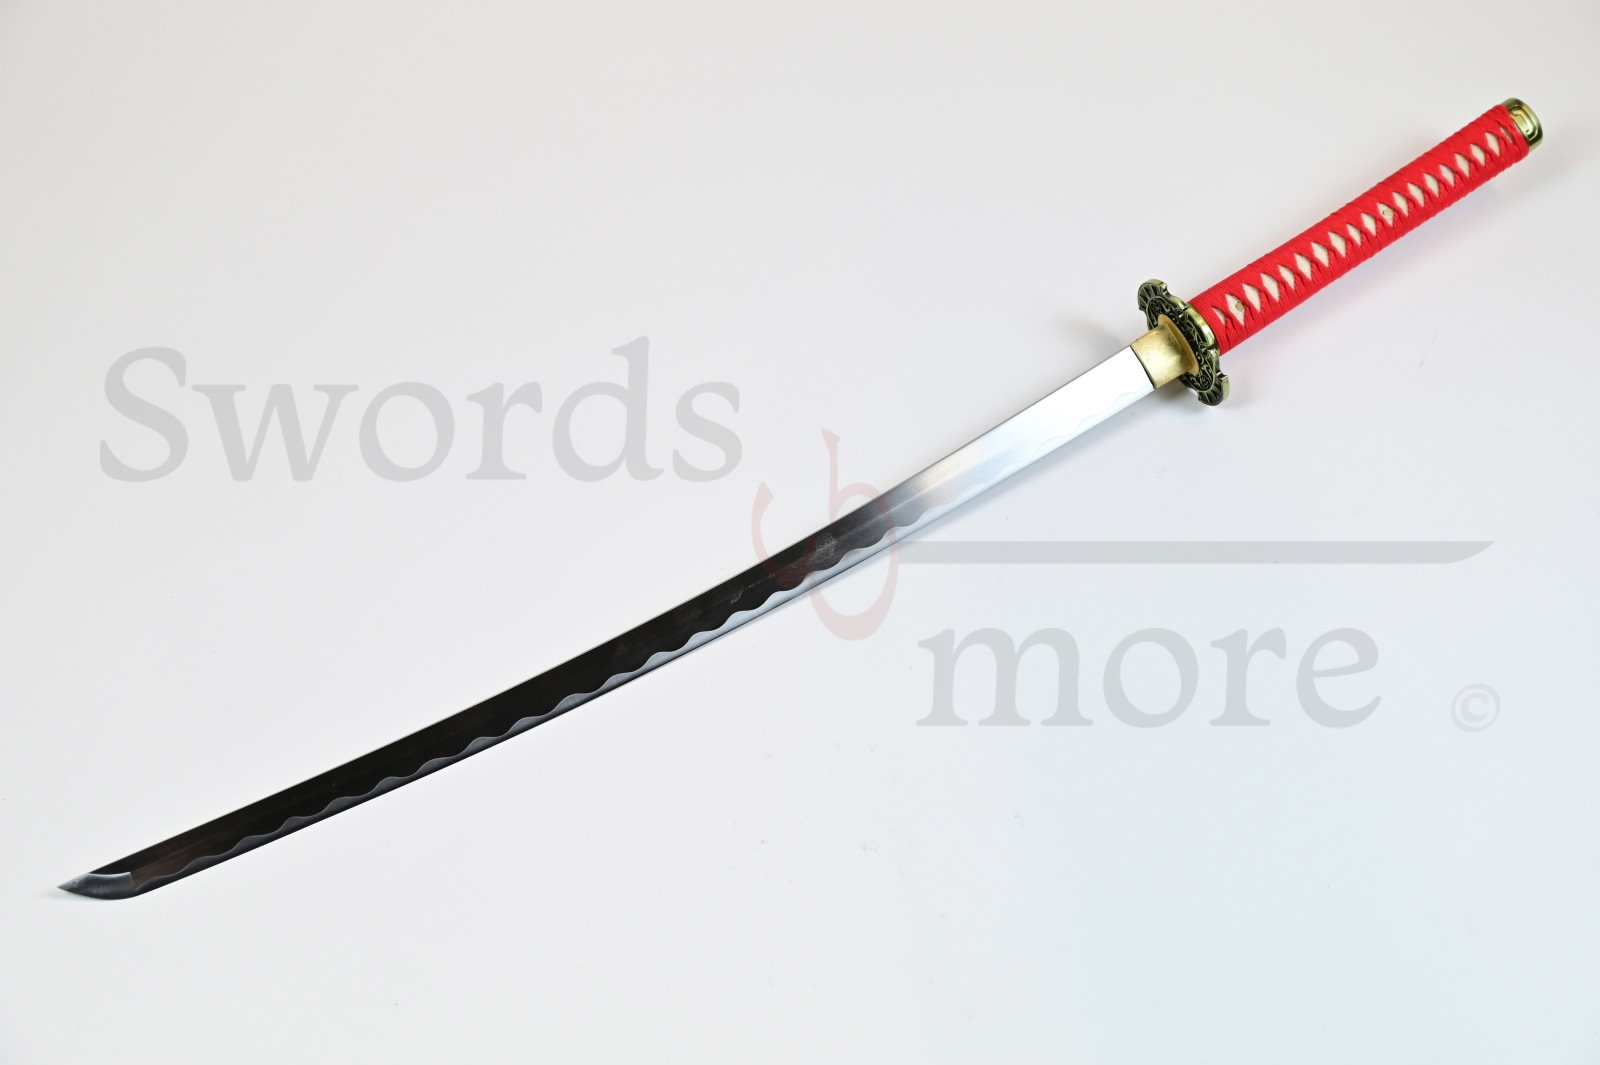 Sword of Ryu Hayabusa handforged